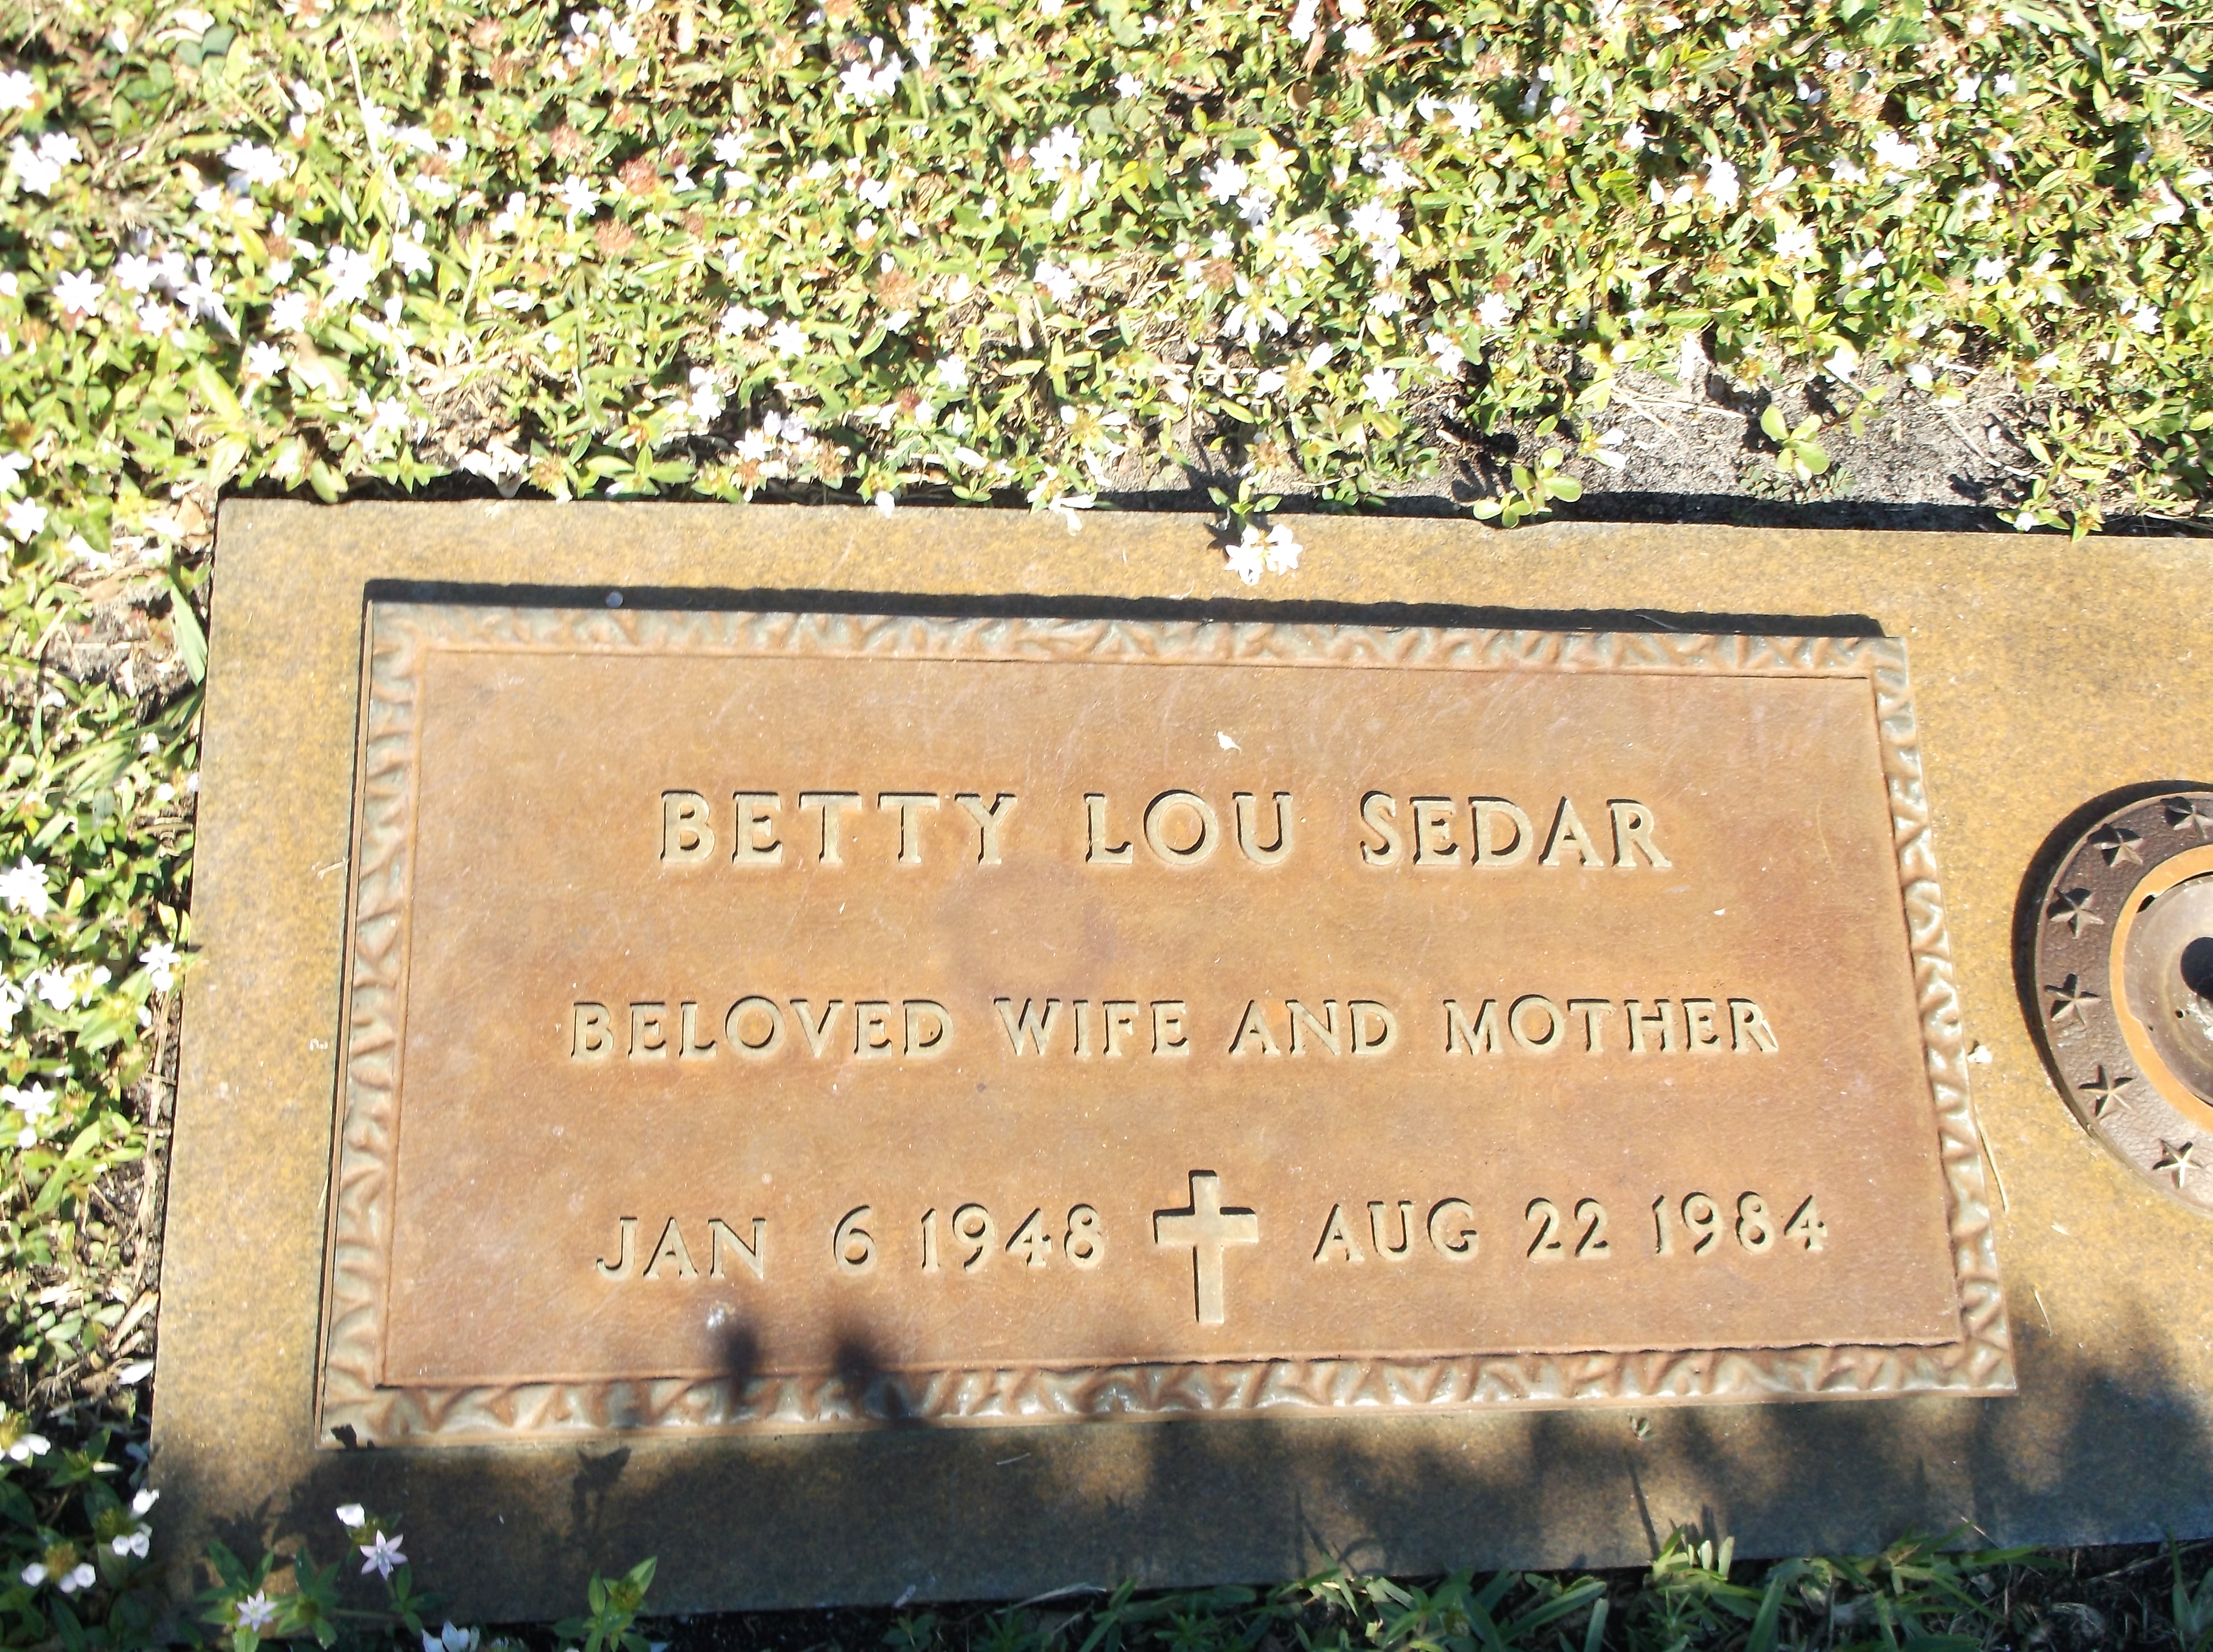 Betty Lou Sedar